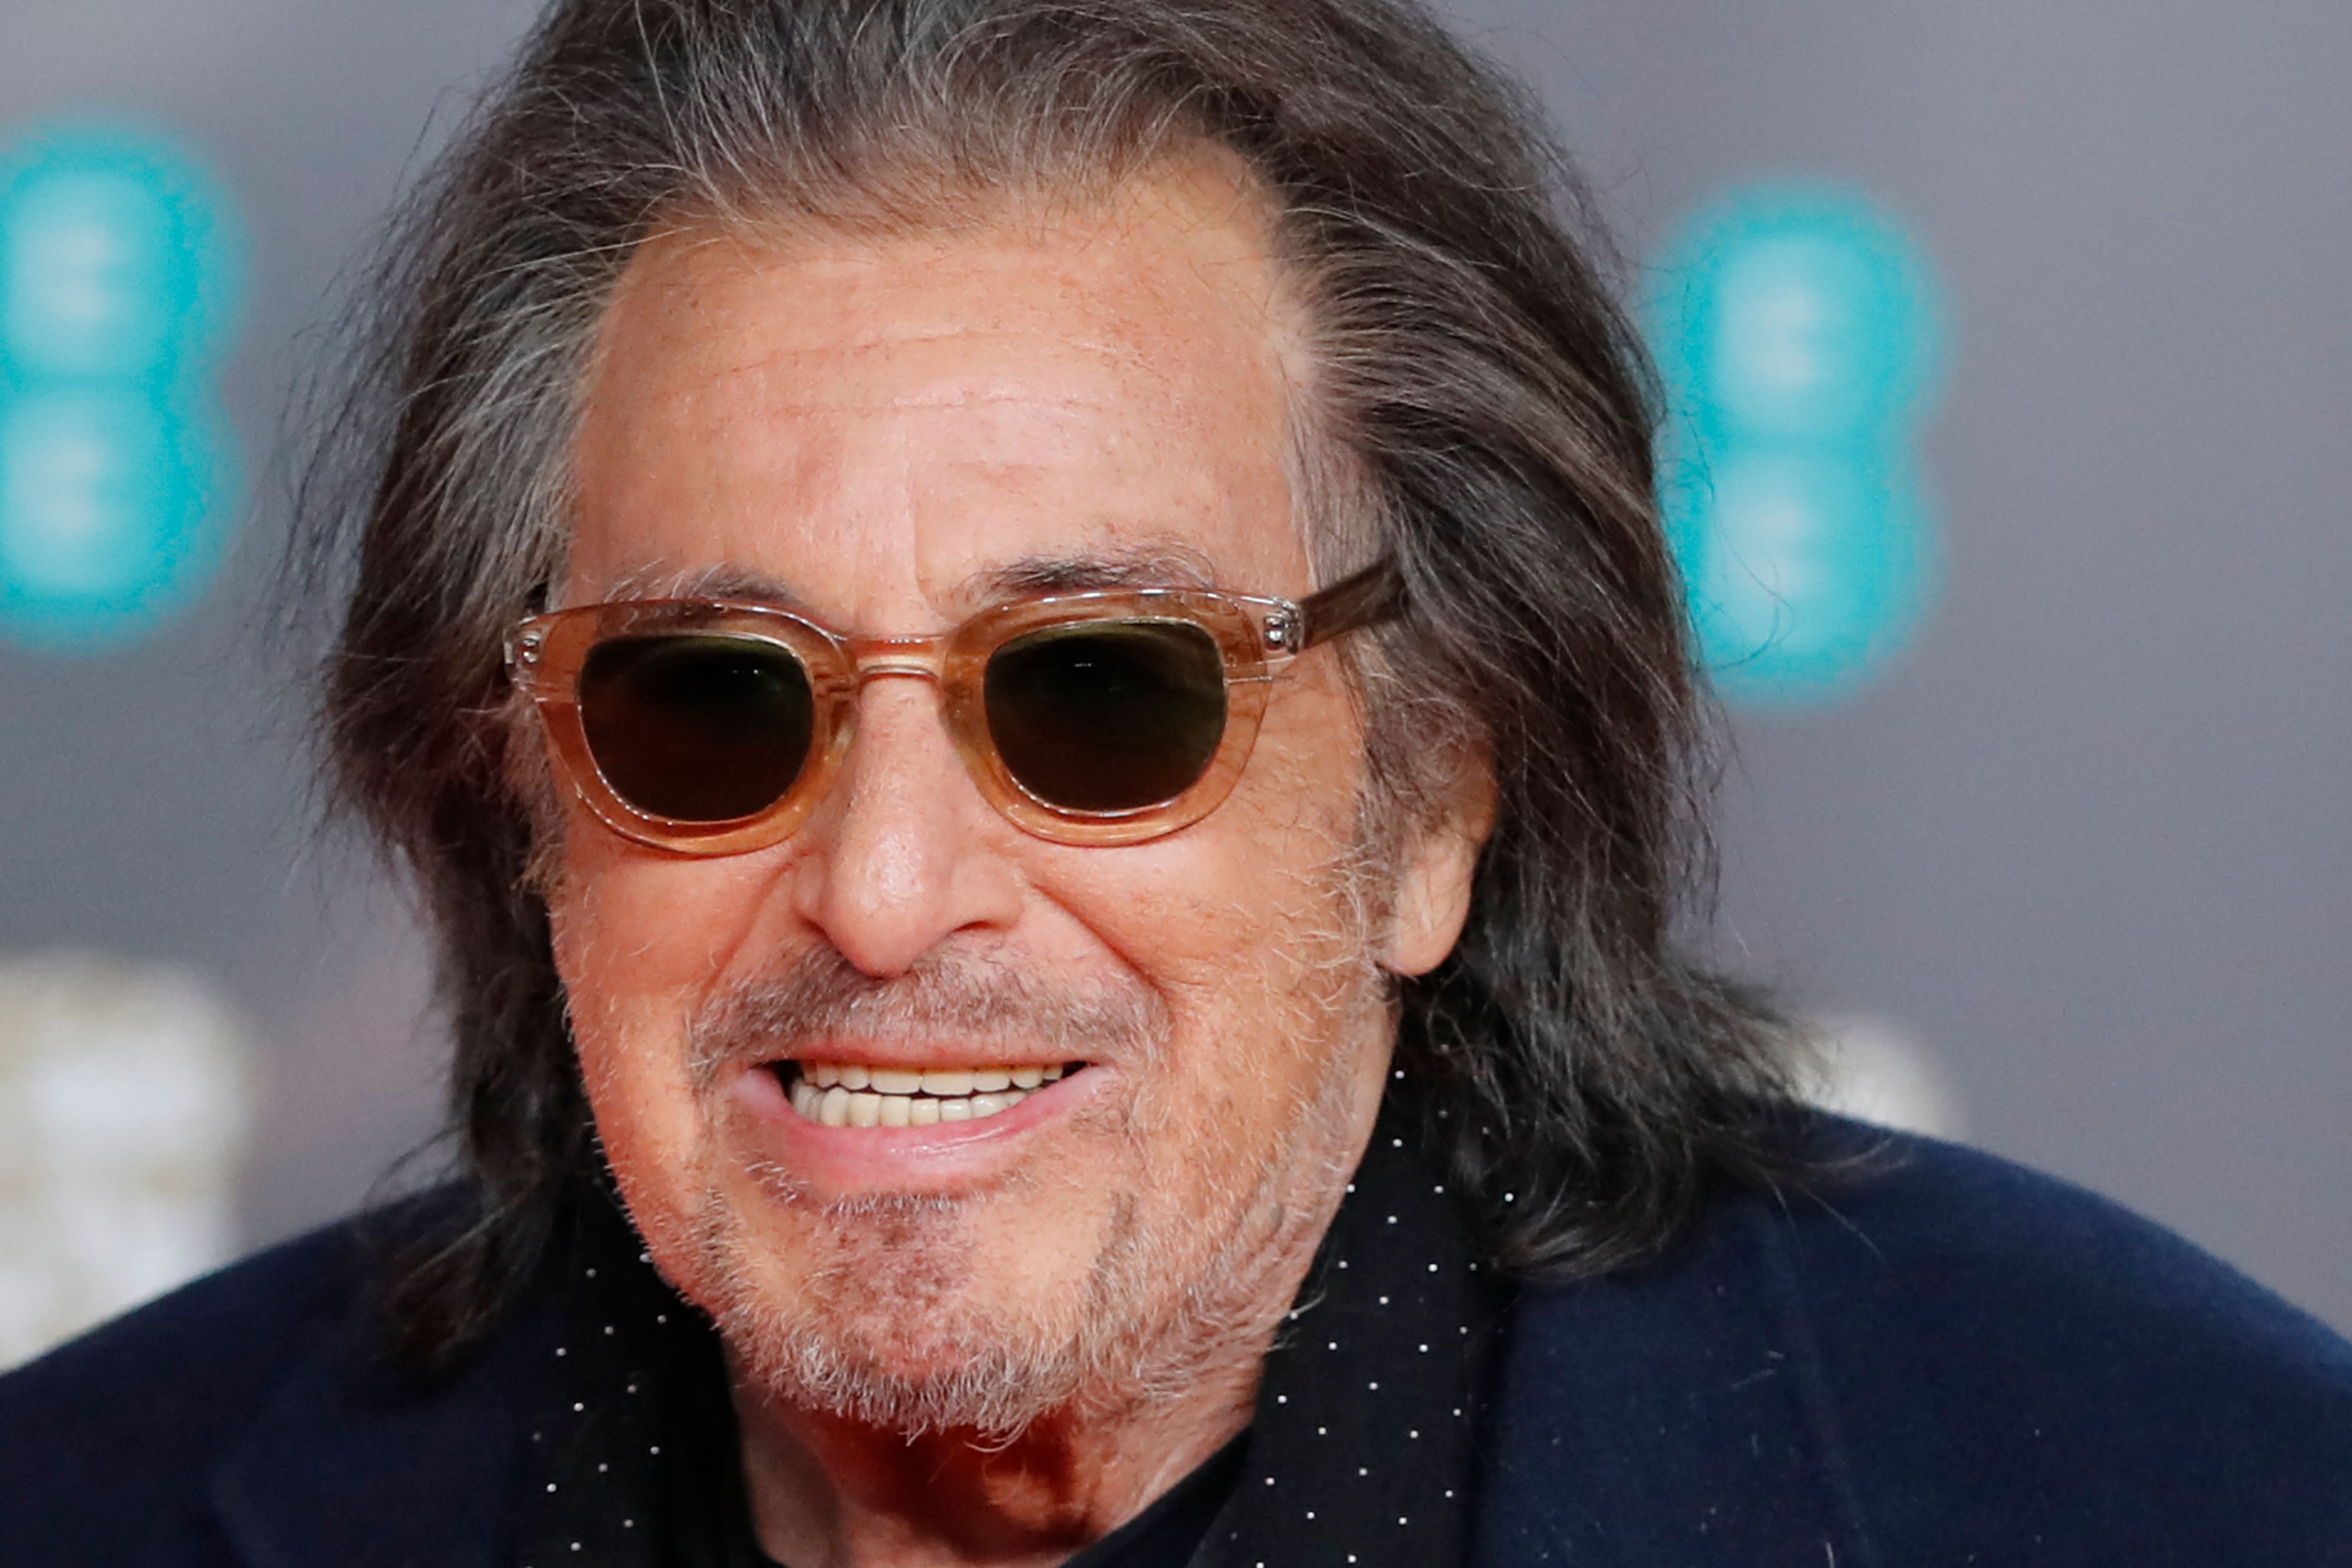 Foto de archivo del actor  Al Pacino en la alfombra roja de los premios BAFTA (British Academy Film Awards) en el Royal Albert Hall en Lóndres, Inglaterra en 2020. (Foto Prensa Libre. AFP)